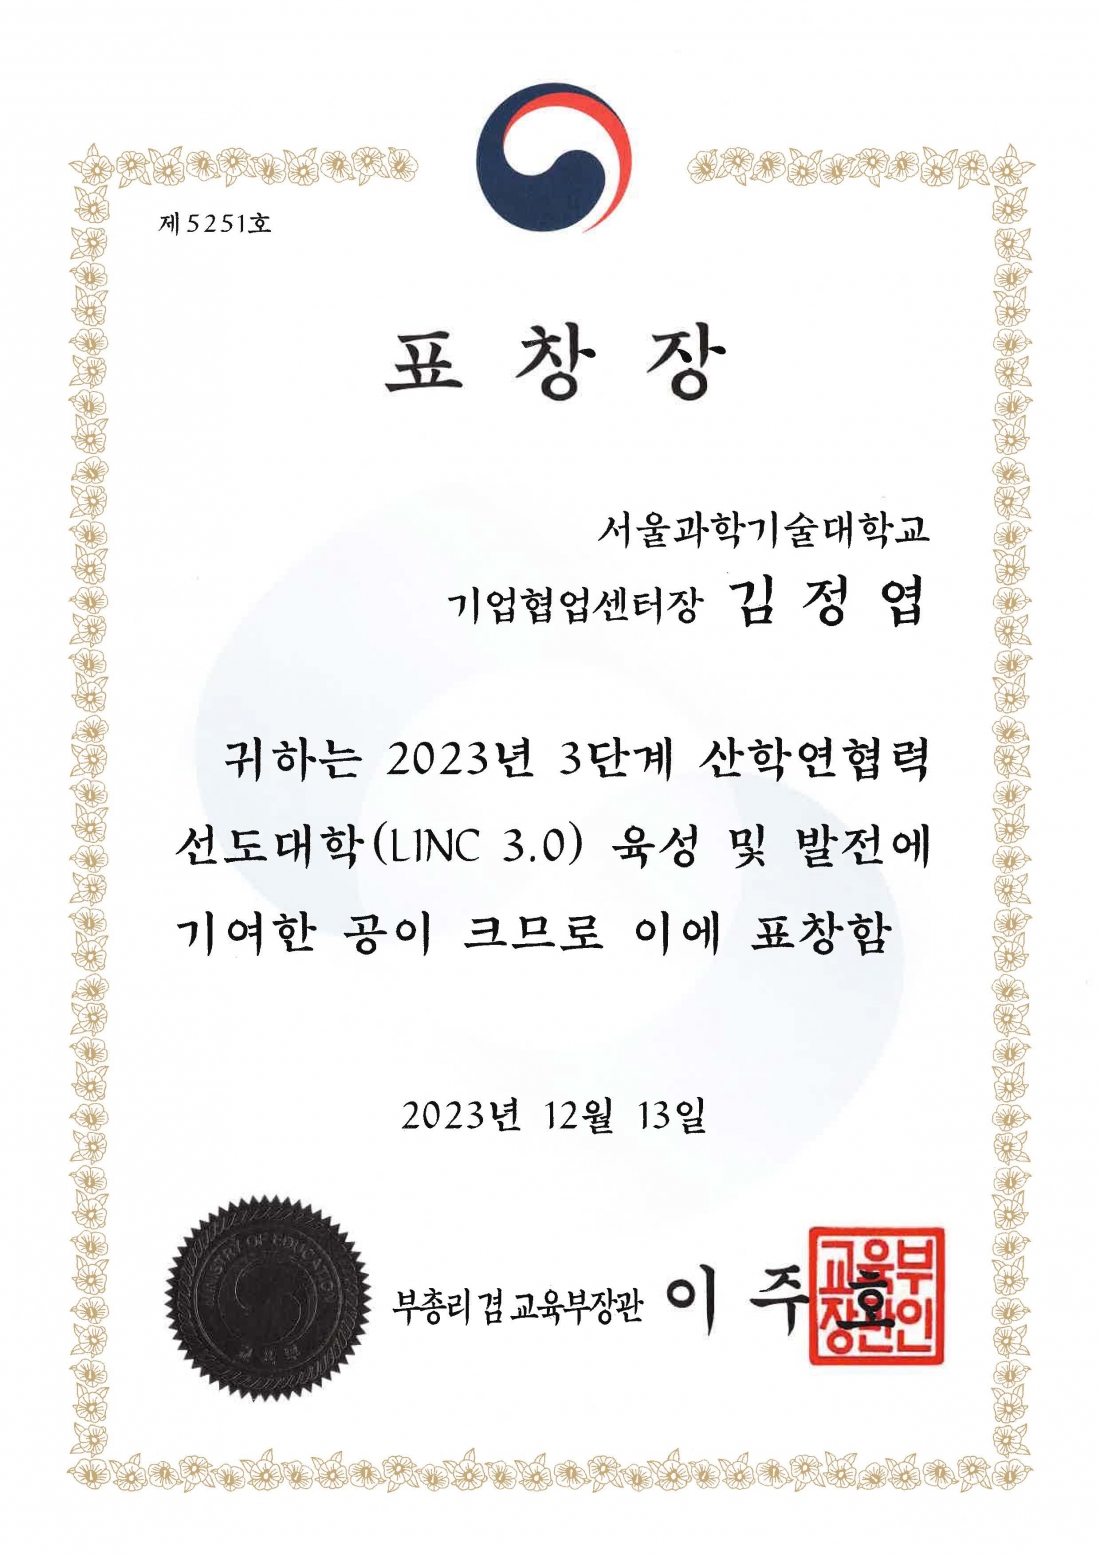 서울과기대 기계시스템디자인공학과 김정엽 교수 'LINC 3.0 사업' 업무유공 표창 수상